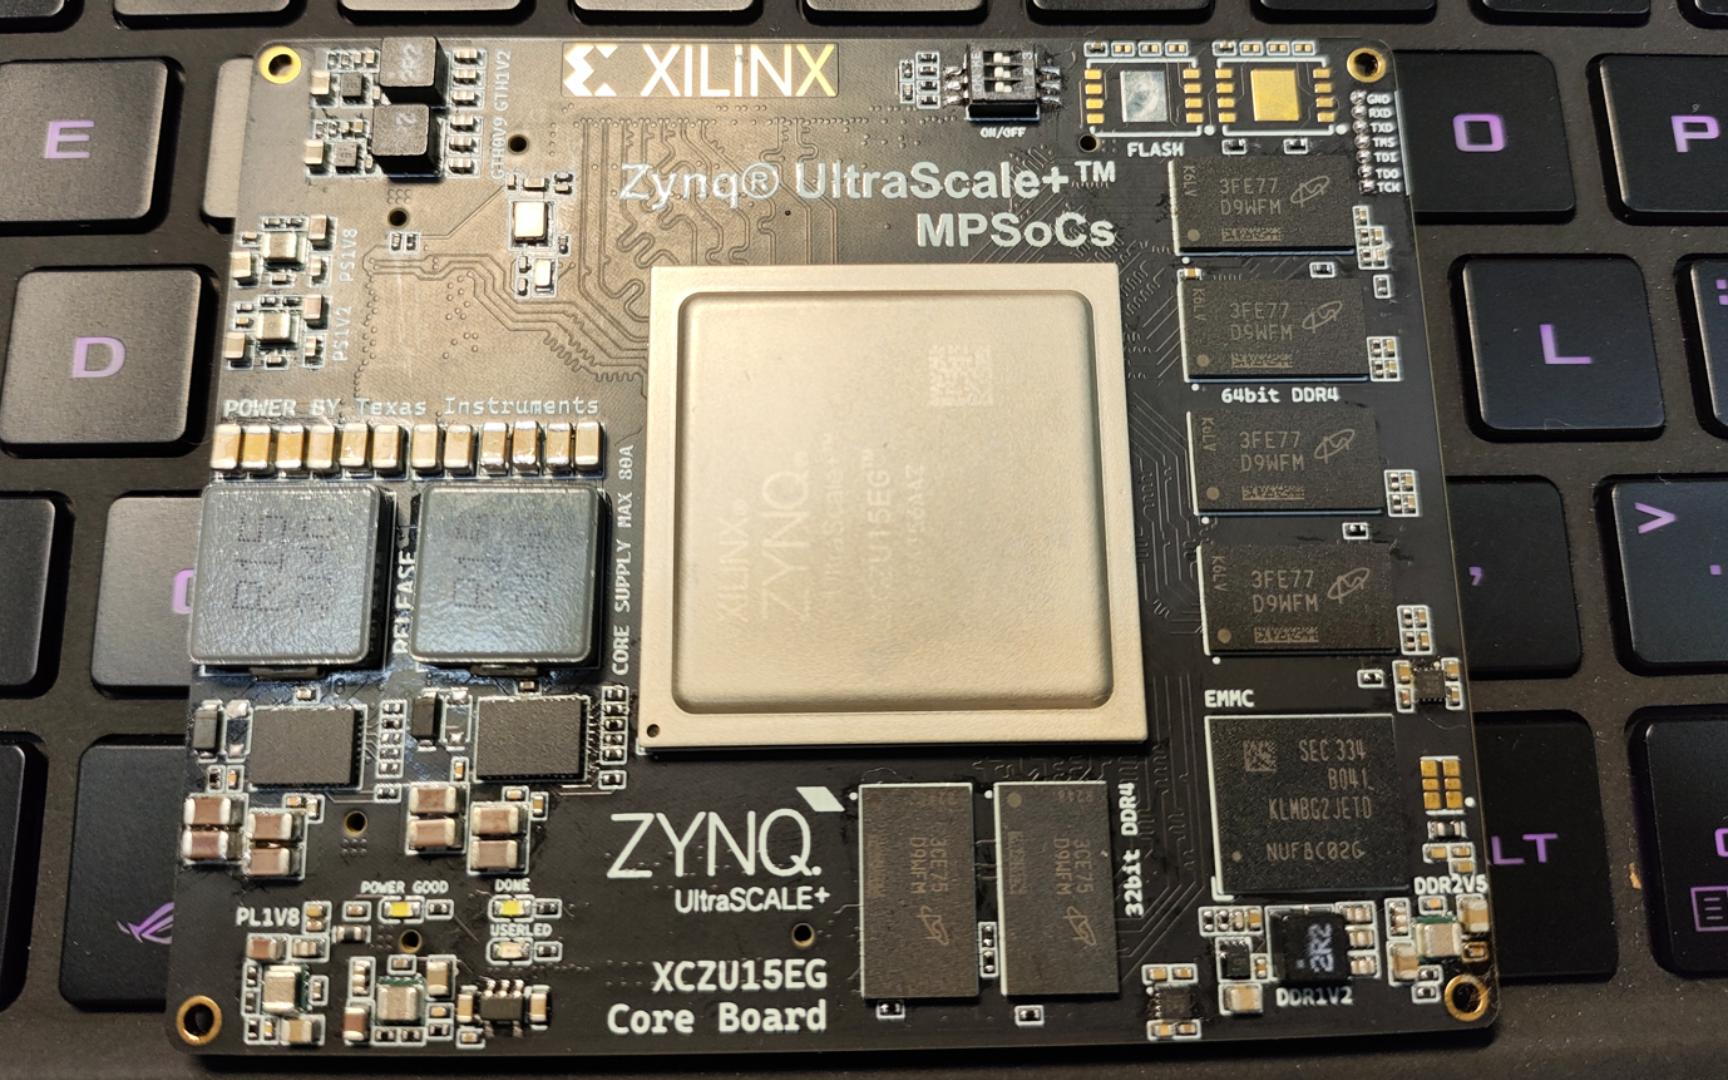 自制ZYNQ-ZU15EG核心板成功喽，它太漂亮了୧꒰•̀ᴗ•́꒱୨